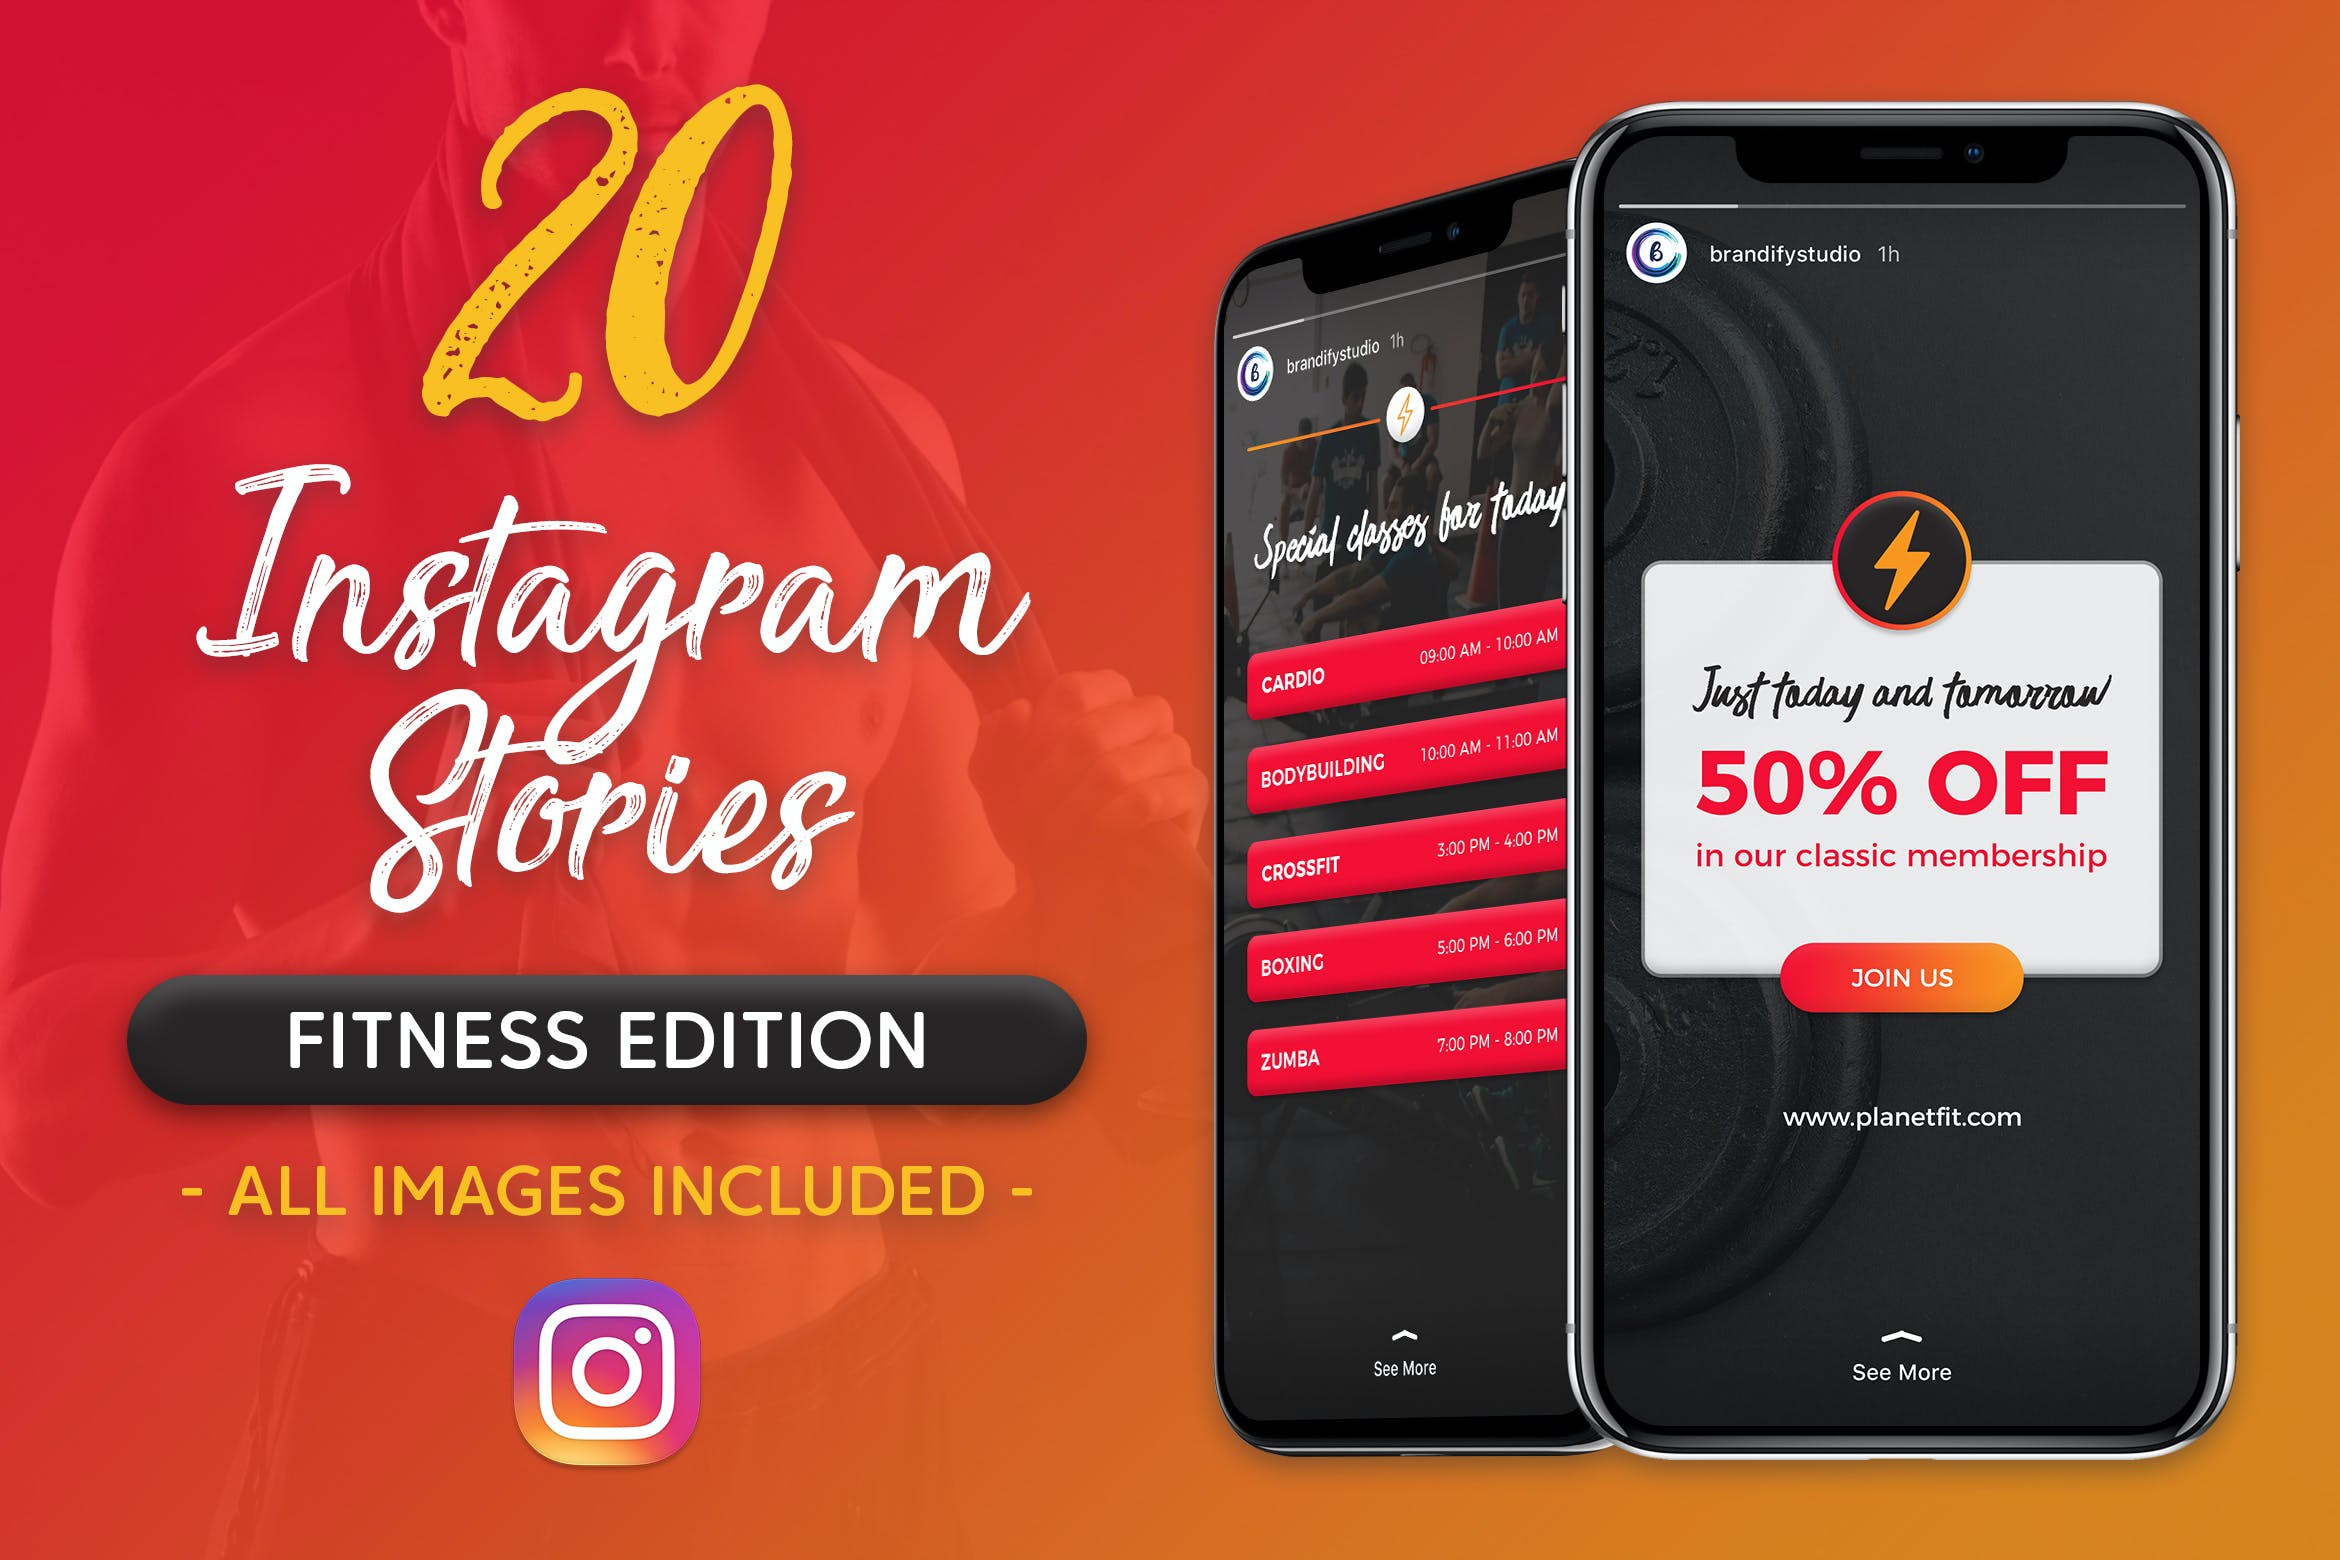 二十个健身俱乐部社交媒体宣传Instagram故事设计模板 Instagram Stories设计素材模板